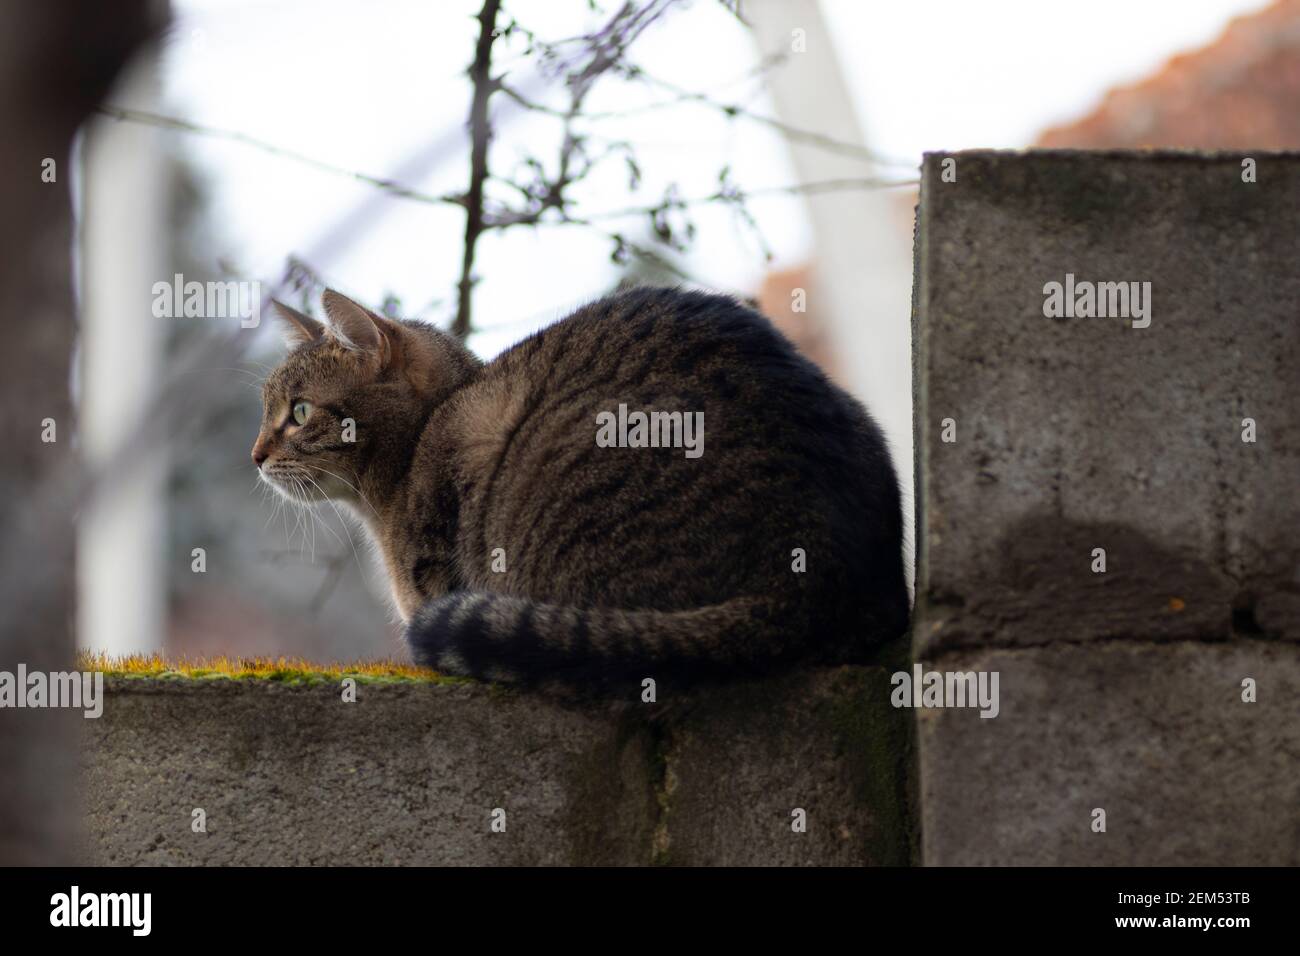 An einem hellen Tag eine tabby Katze auf einem Zaun Auf einem grünen Moos Stockfoto